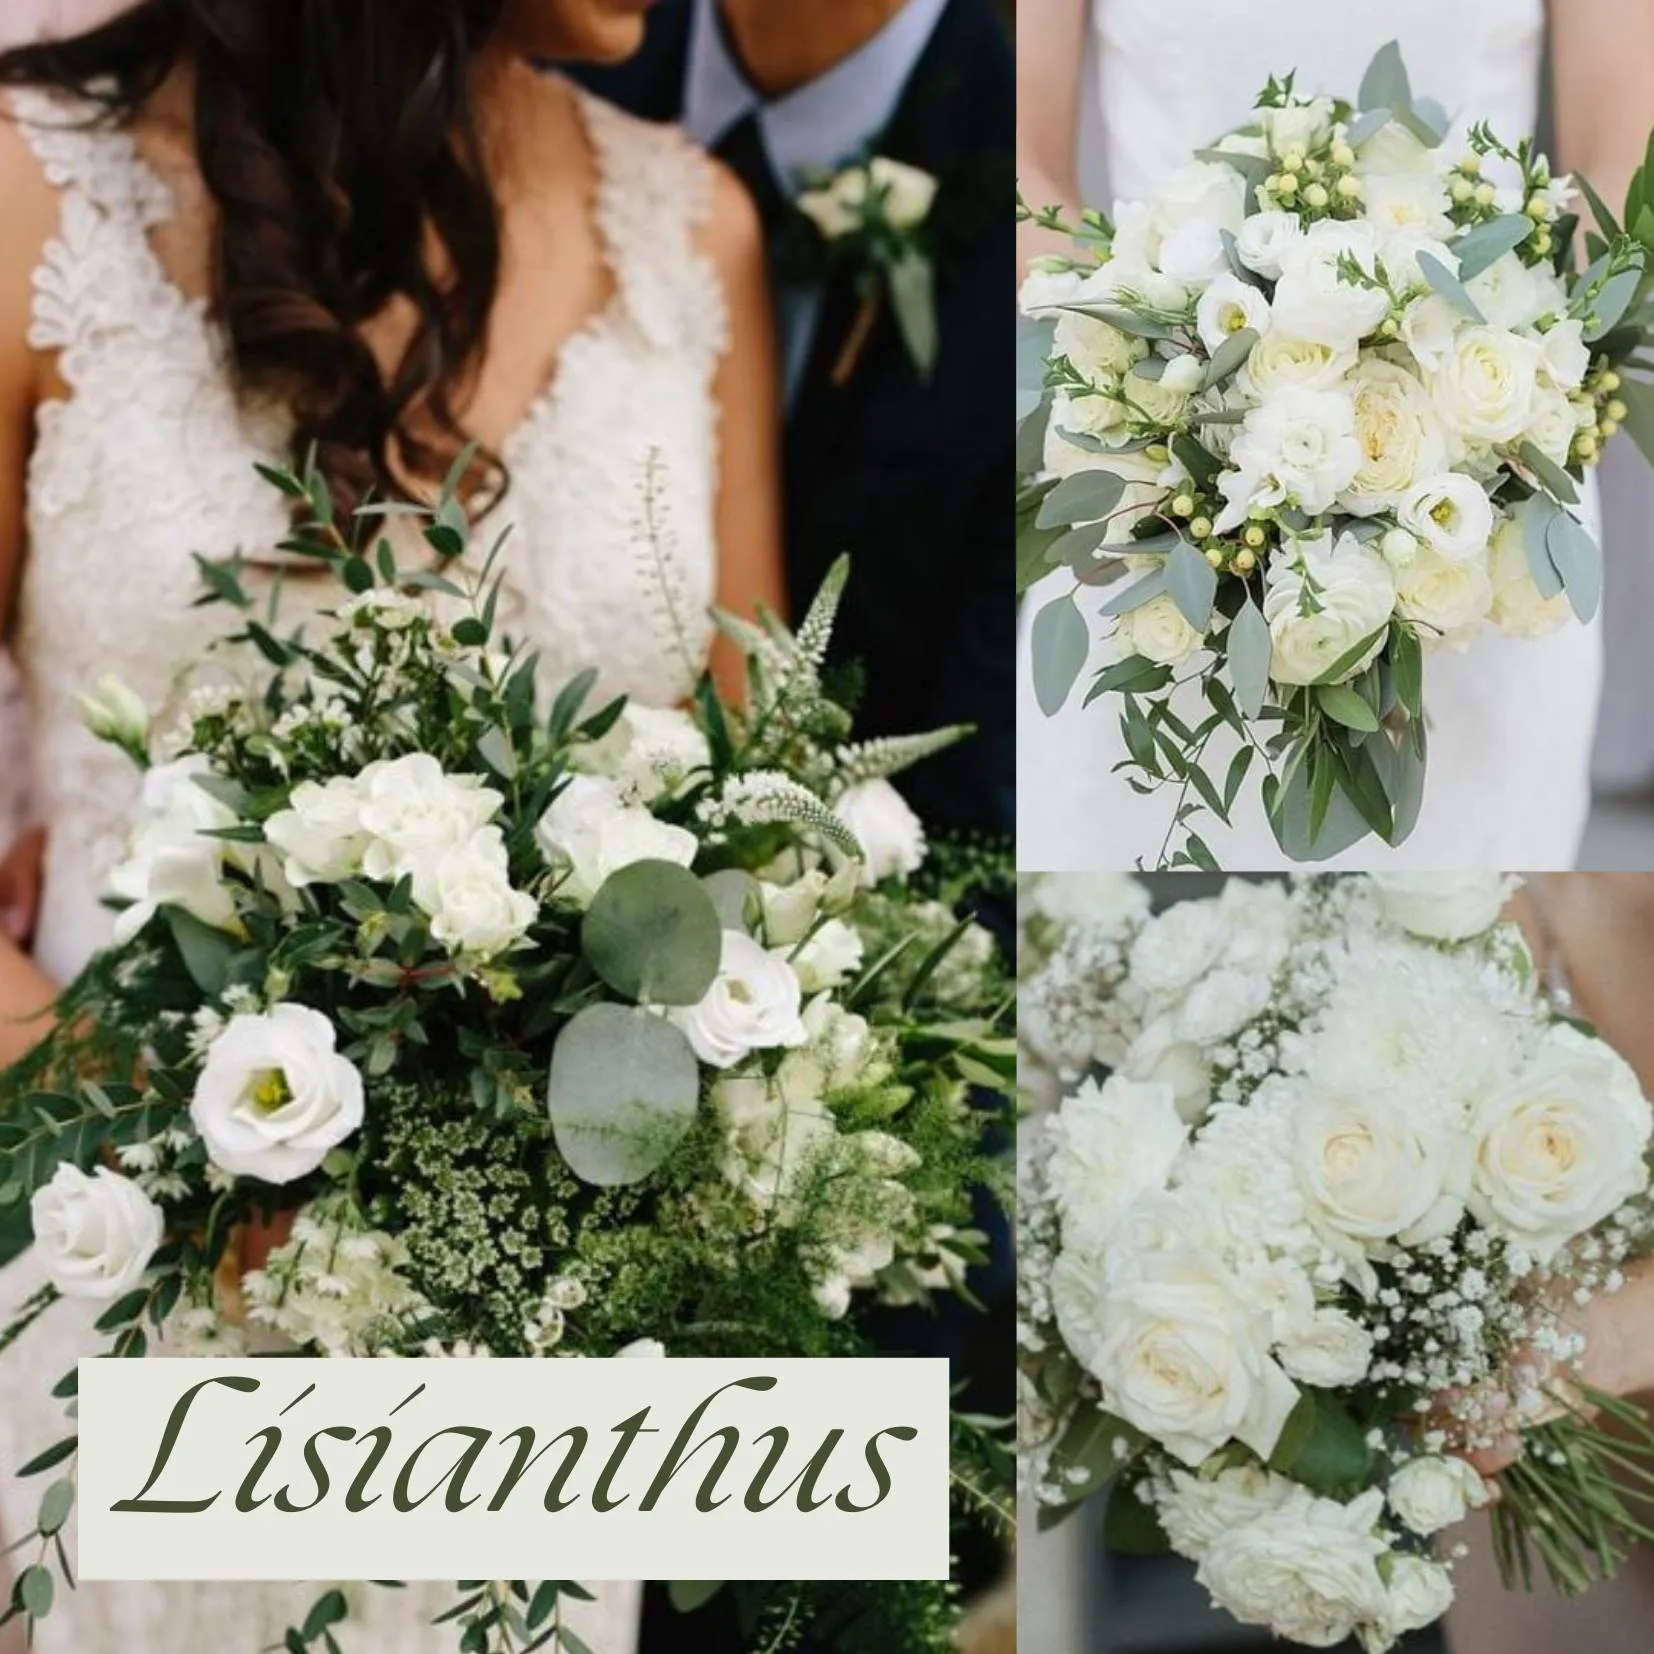 ดอกไม้ในวันแต่งงาน - ดอกไลเซนทัส (Lisianthus)